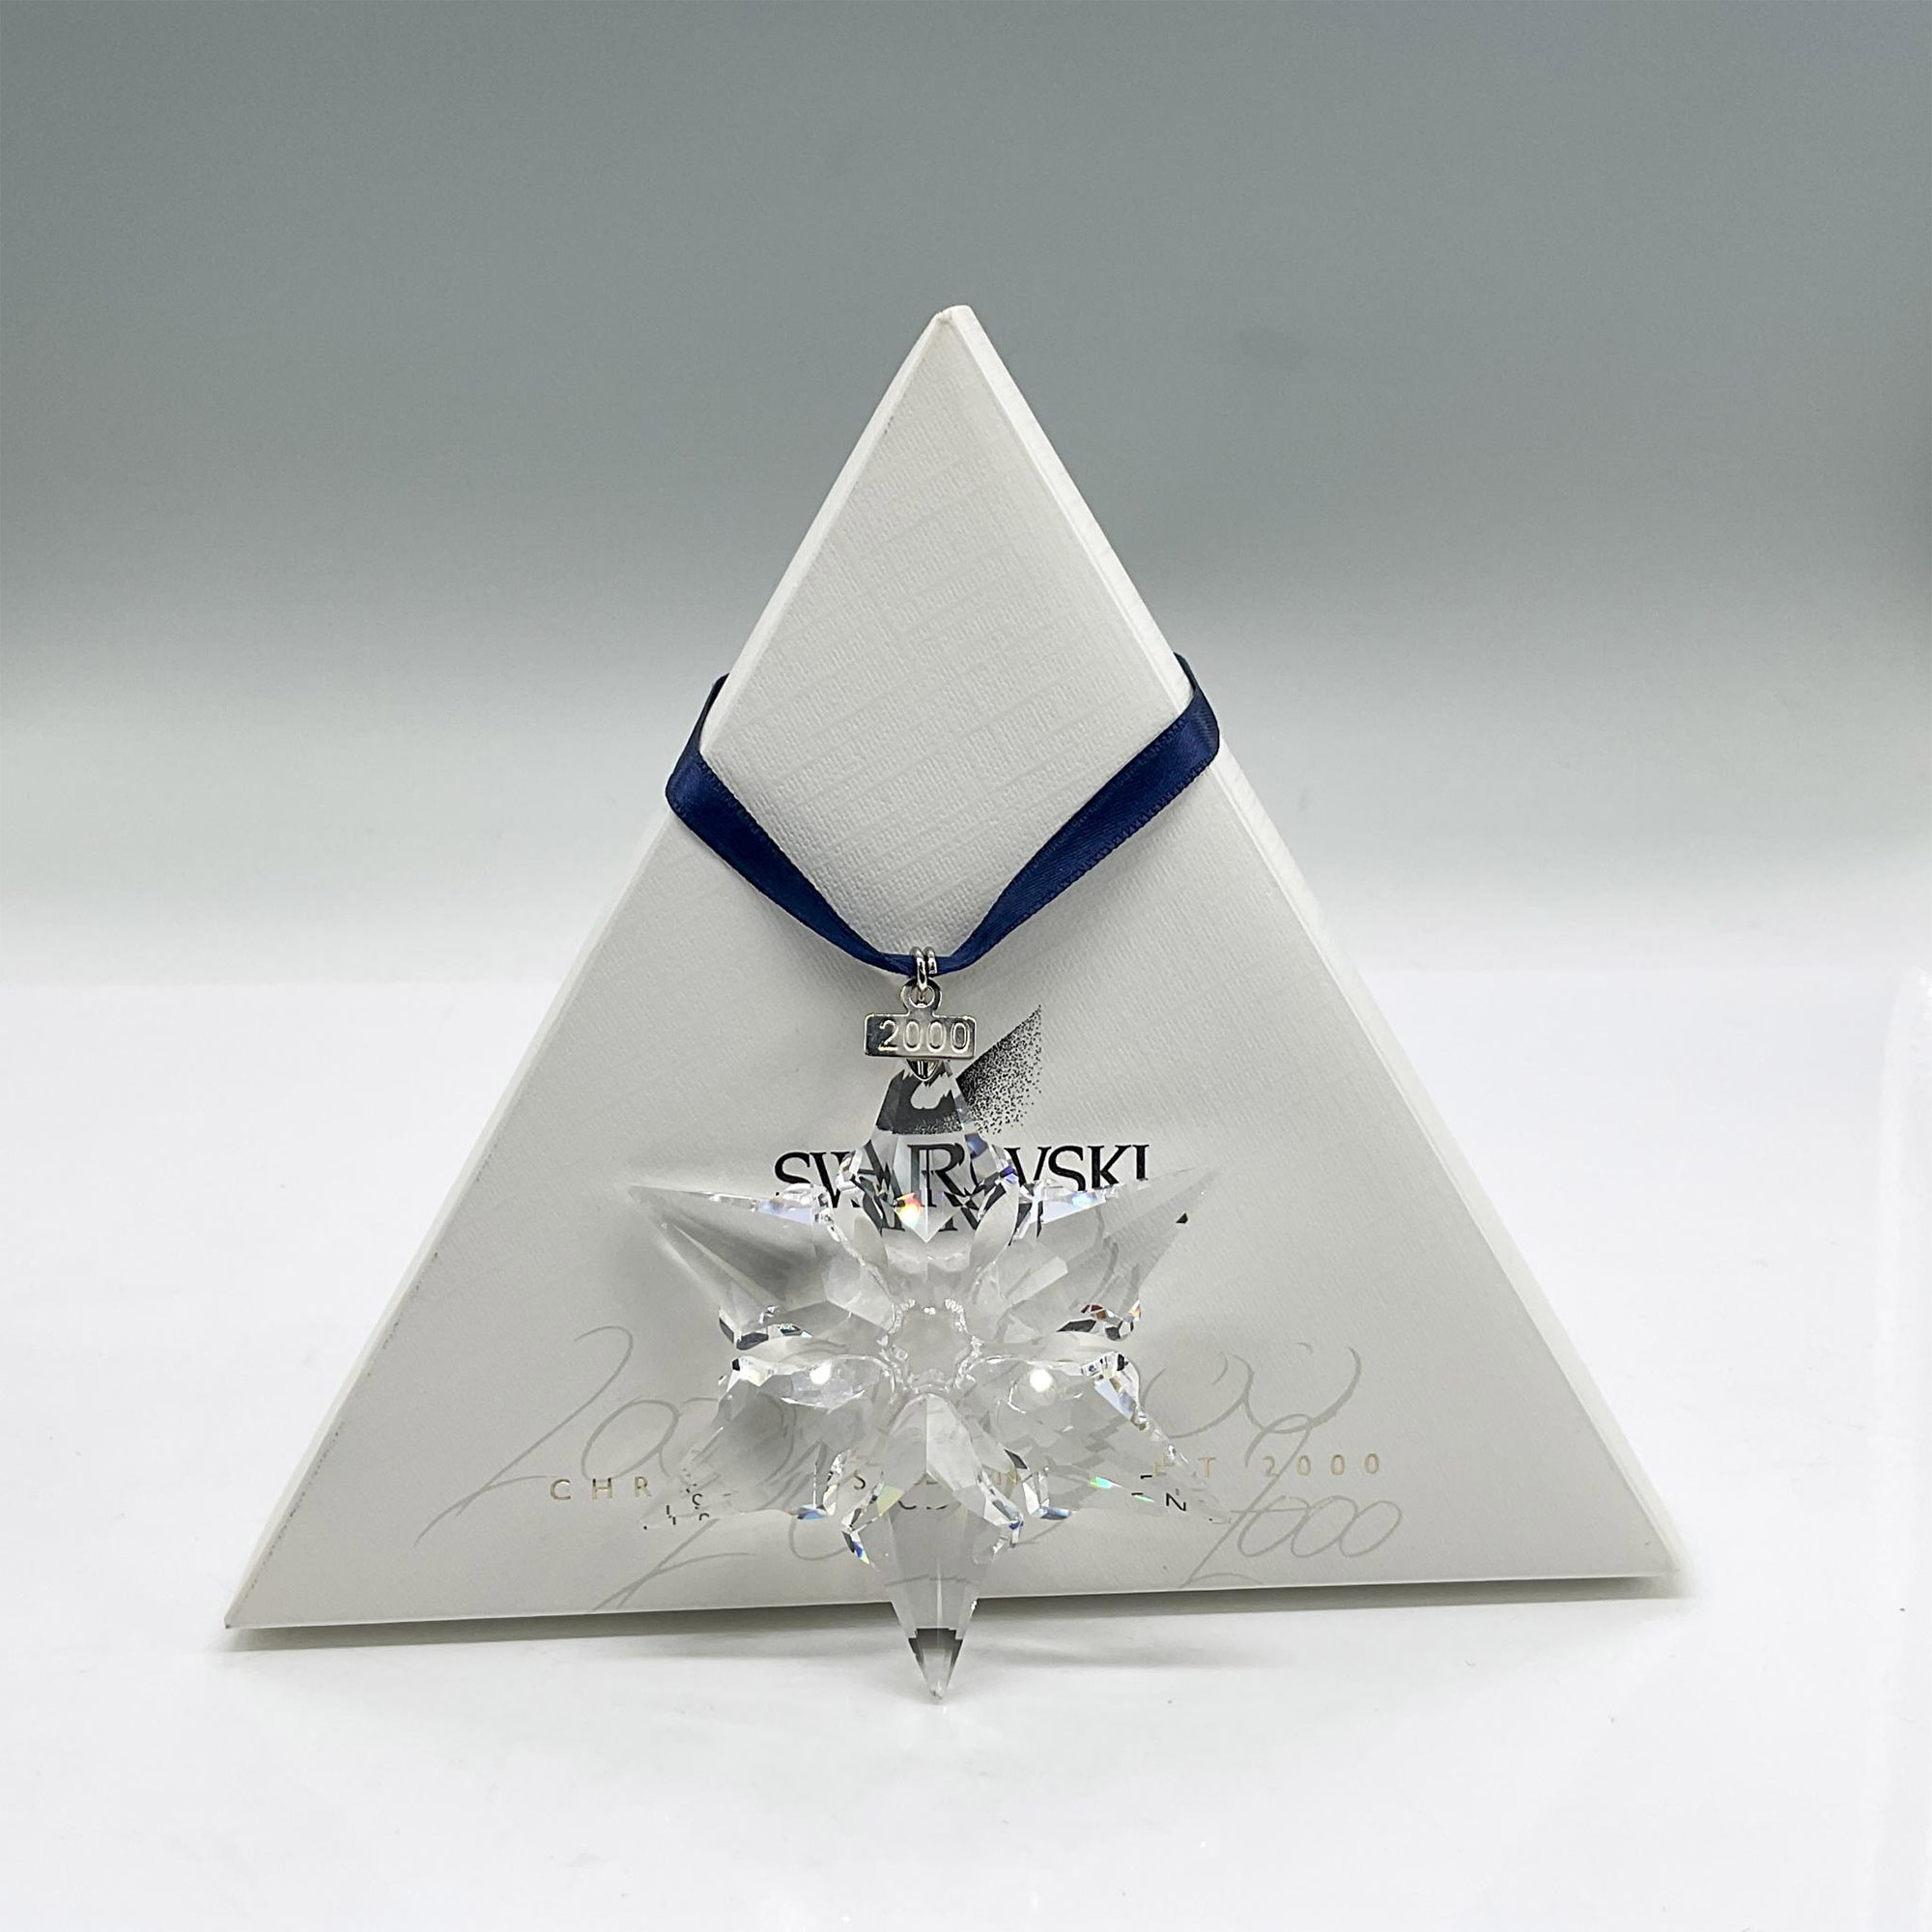 Swarovski Crystal Christmas Ornament 2000 - Image 3 of 3